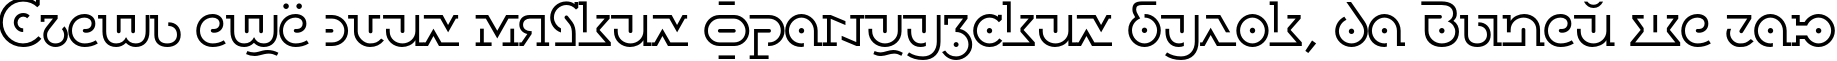 Пример написания шрифтом DublonBrusLight текста на русском